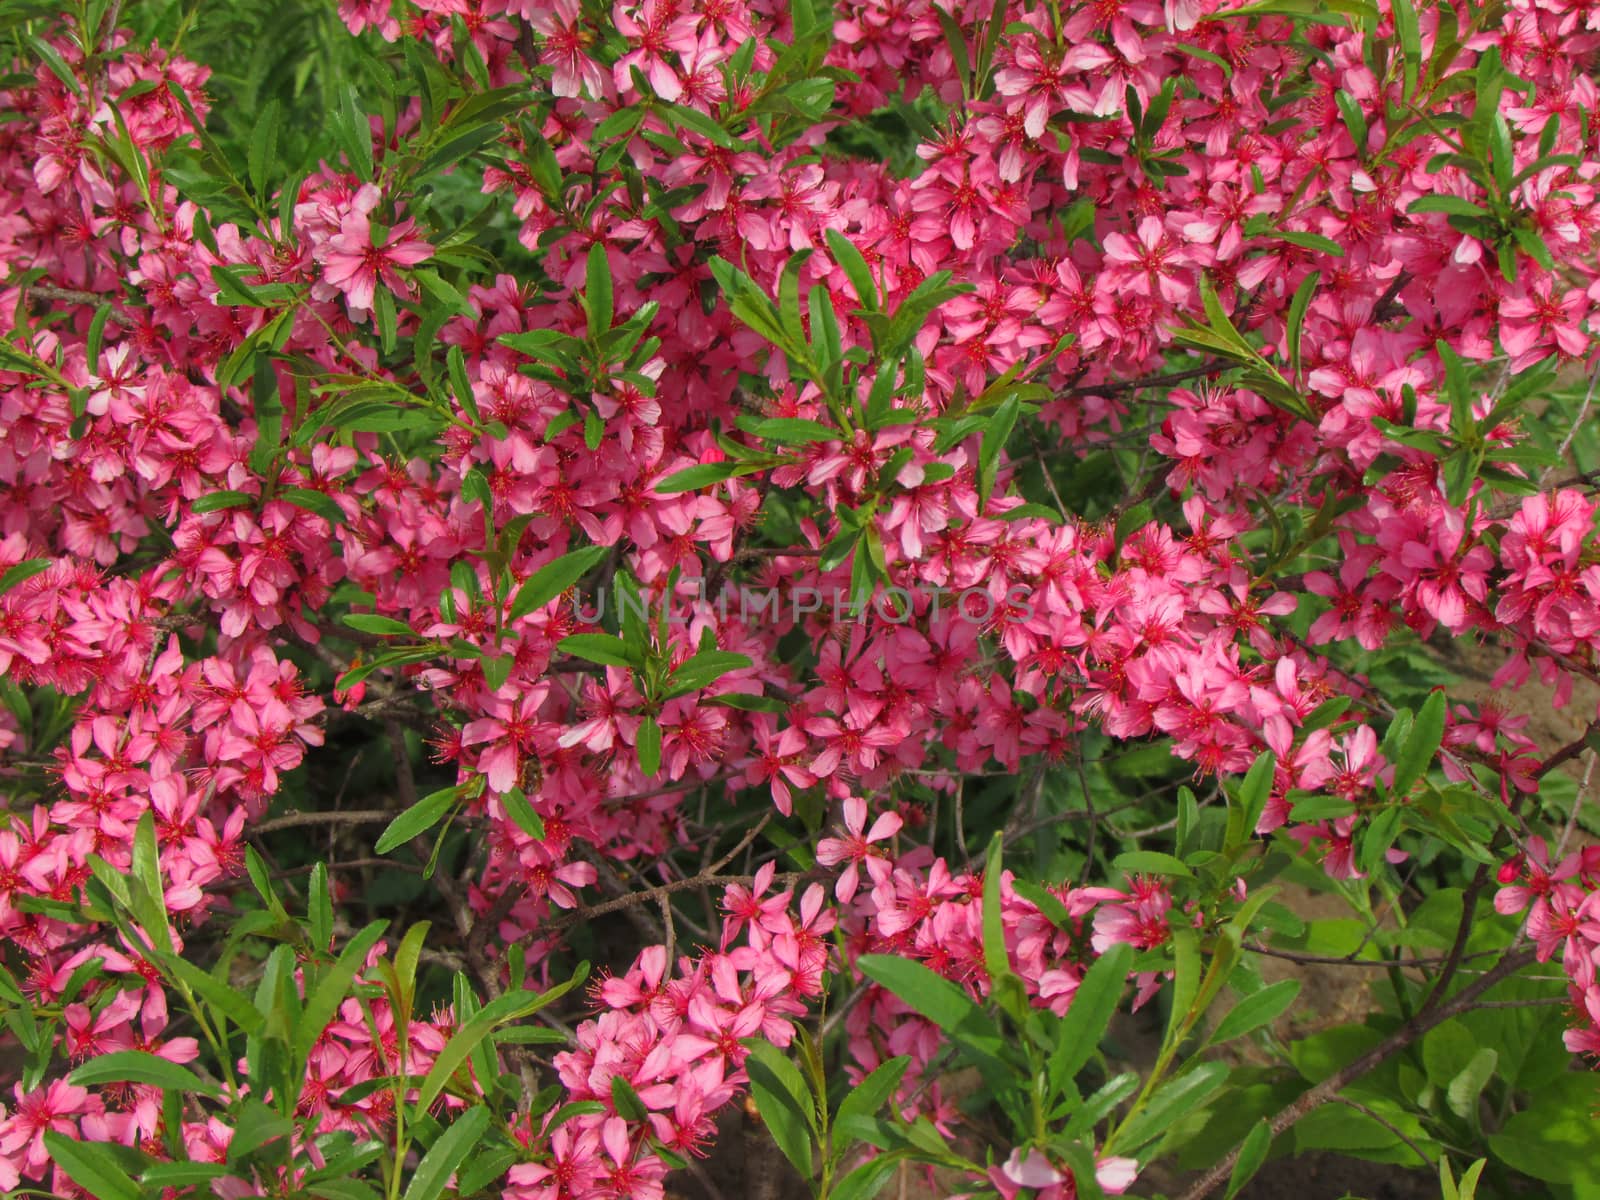 Beautiful little pink flowers on Bush